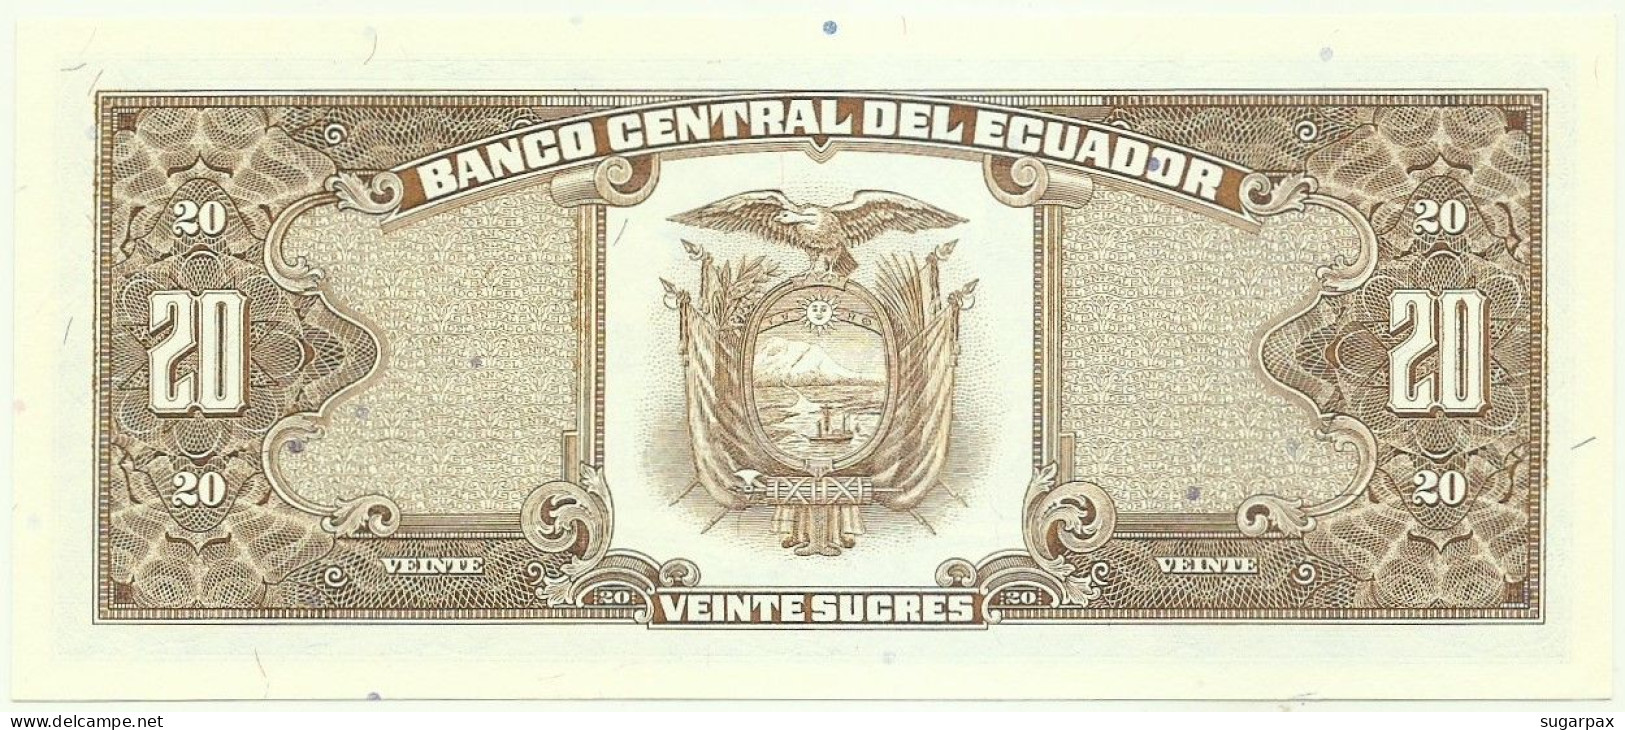 ECUADOR - 20 SUCRES - 22.11.1988 - Pick 121A - UNC. - Série LQ - Ecuador